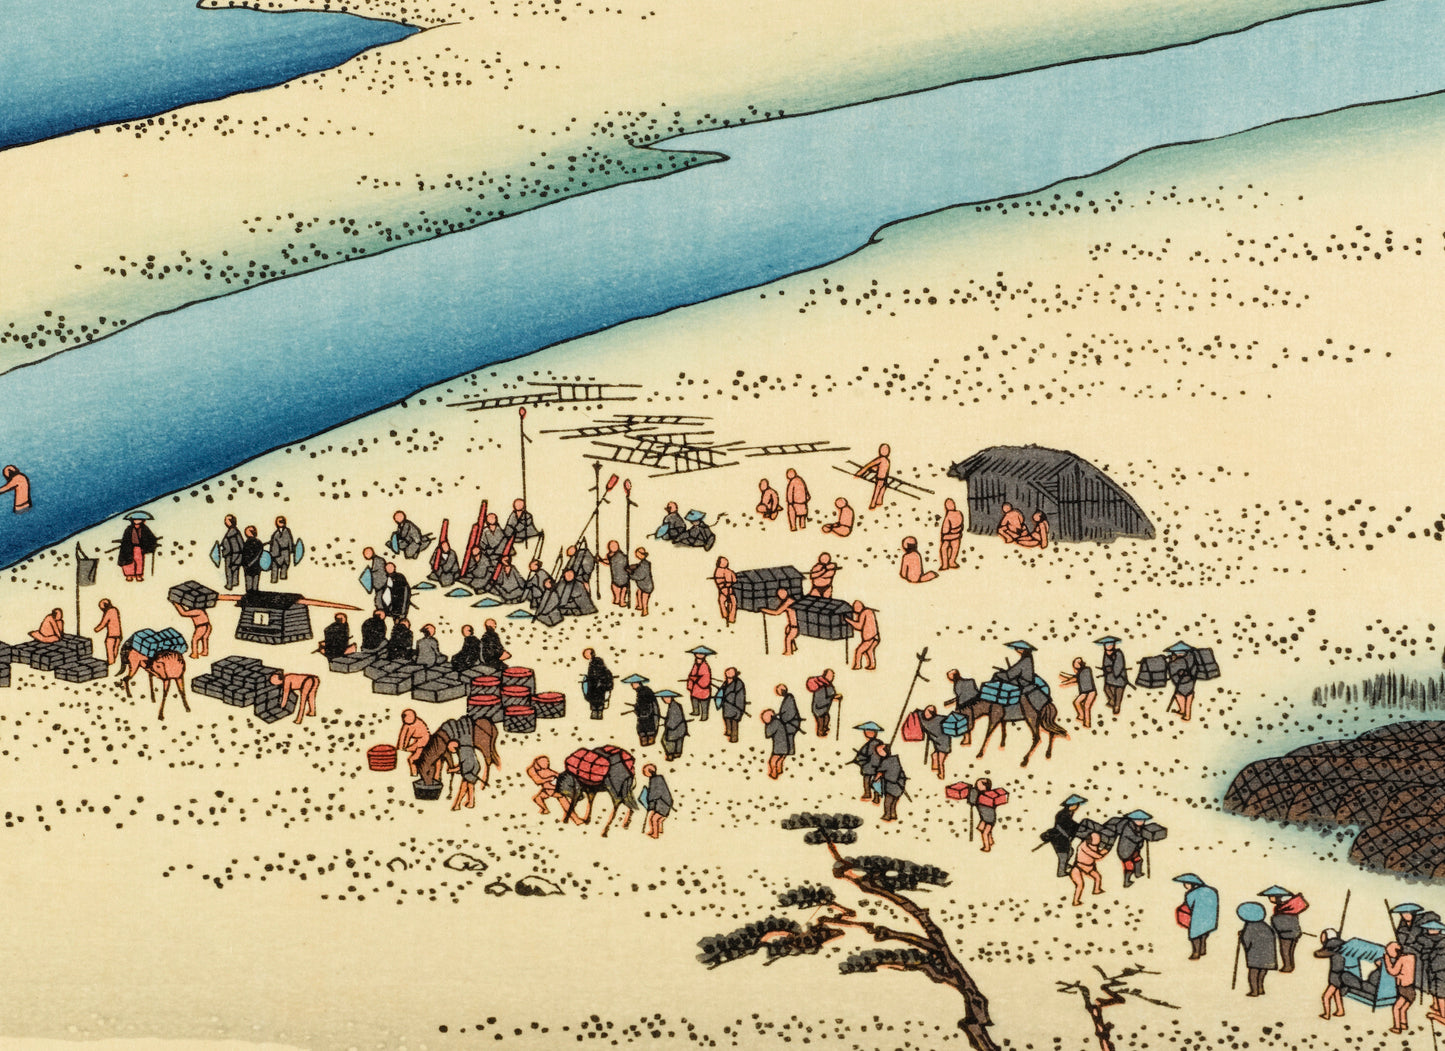 estampe japonaise de Hiroshige, des personnes se préparent pour traverser la rivière à pied